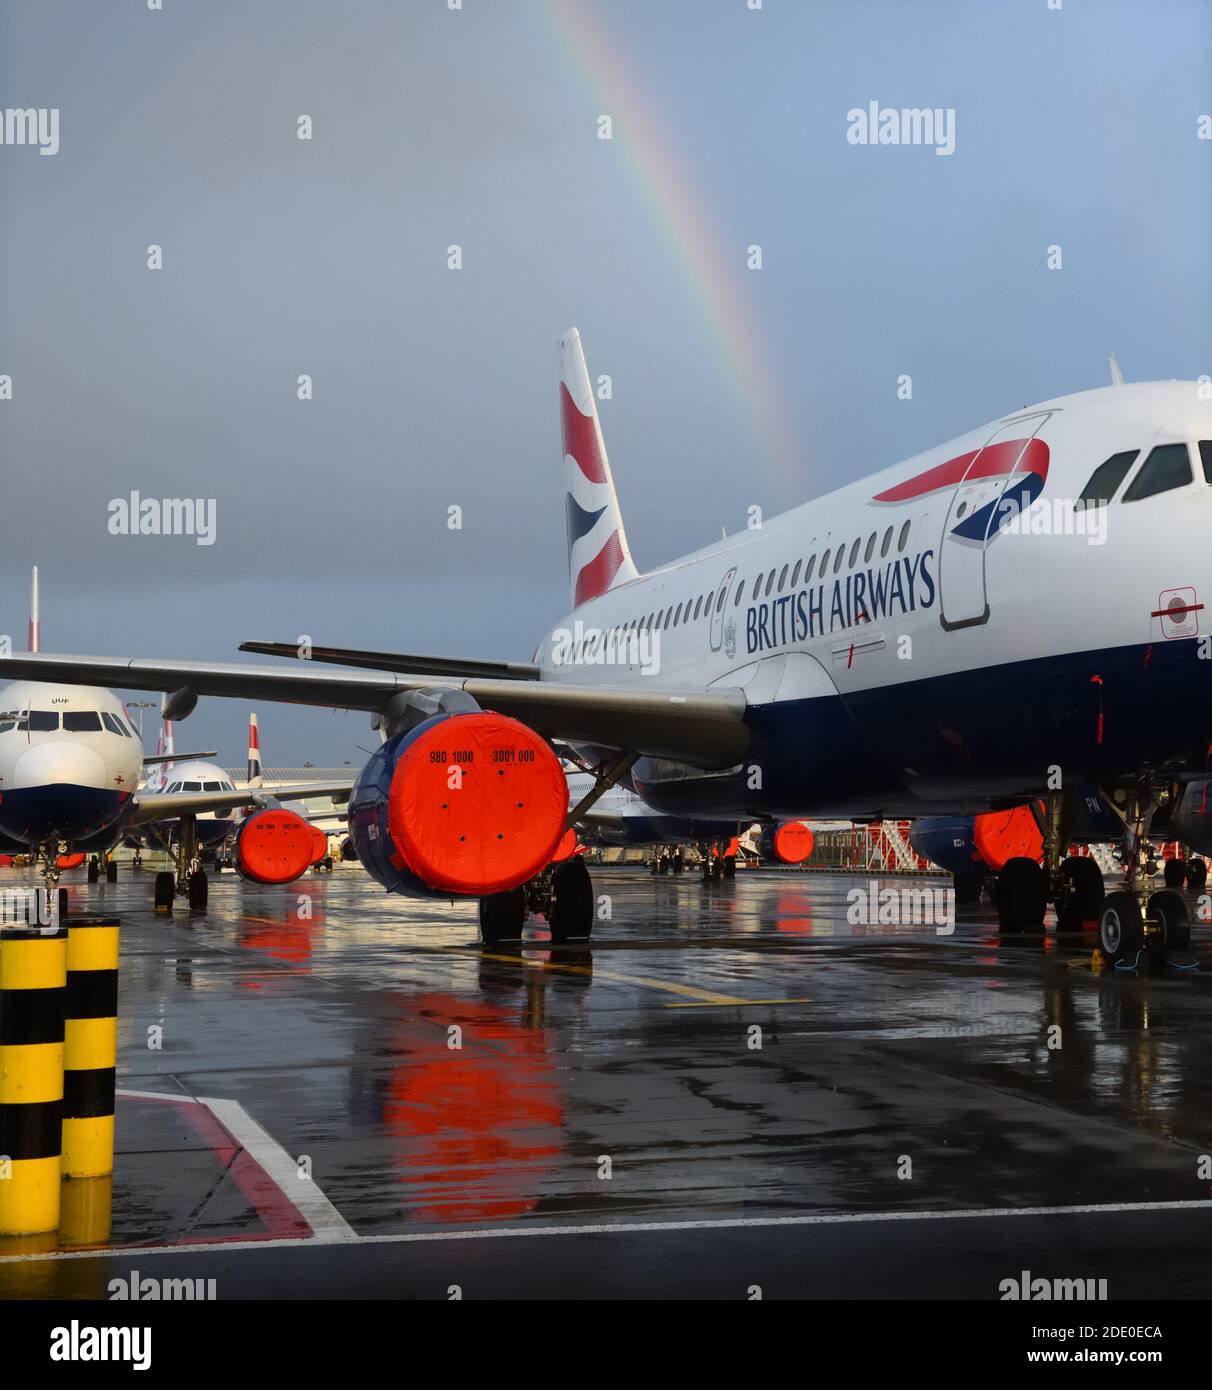 Nuage de pluie et arc-en-ciel au-dessus d'un avion britannique Airways immobilisé à l'aéroport international de Glasgow, Écosse, Royaume-Uni Banque D'Images